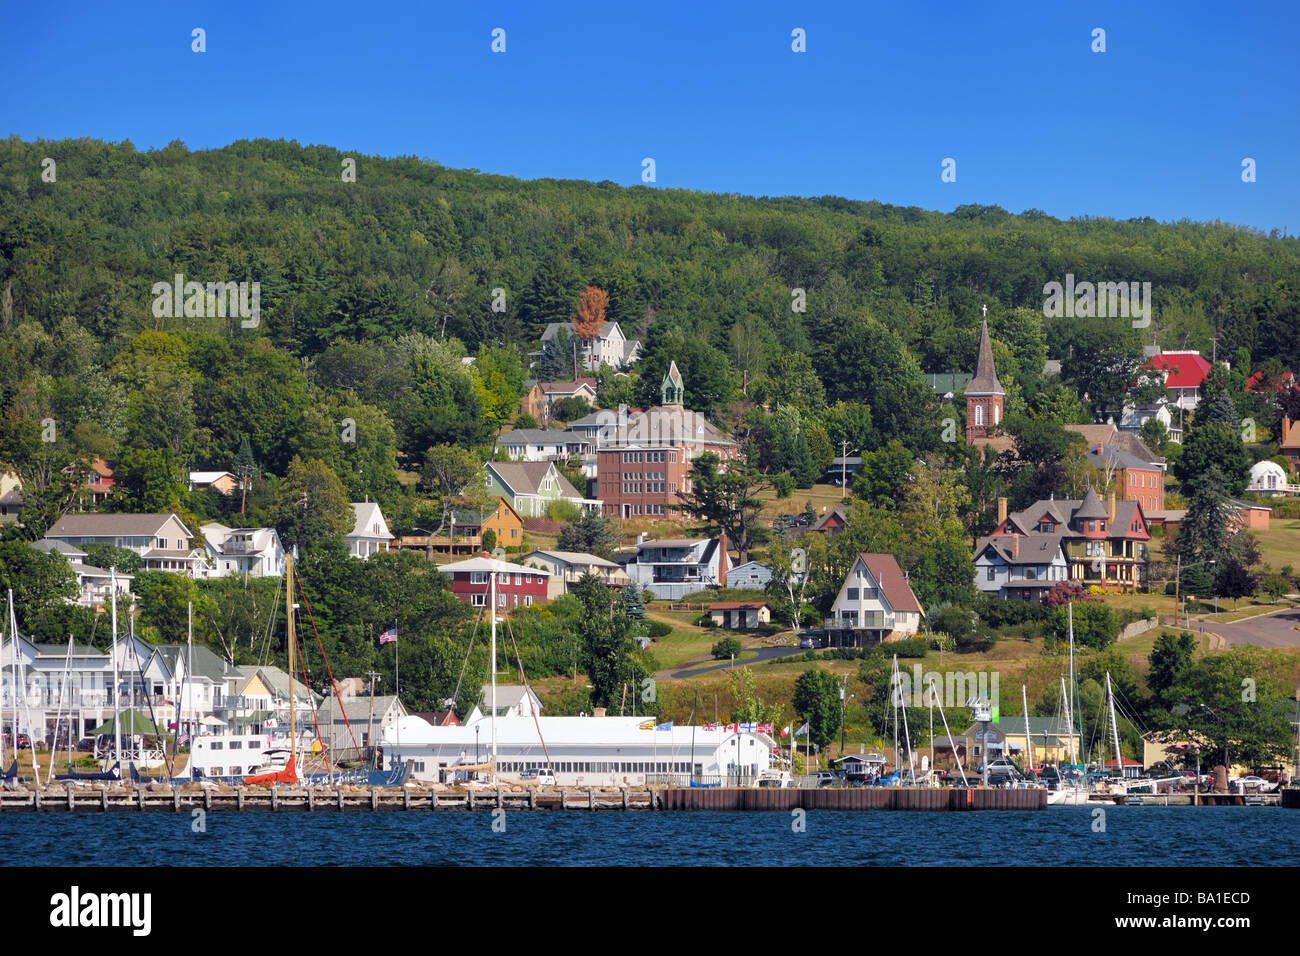 Der Hafen und die kleine Stadt Bayfield wie gesehen von der Fähre nach Madeline Island, Wisconsin, USA Stockfoto